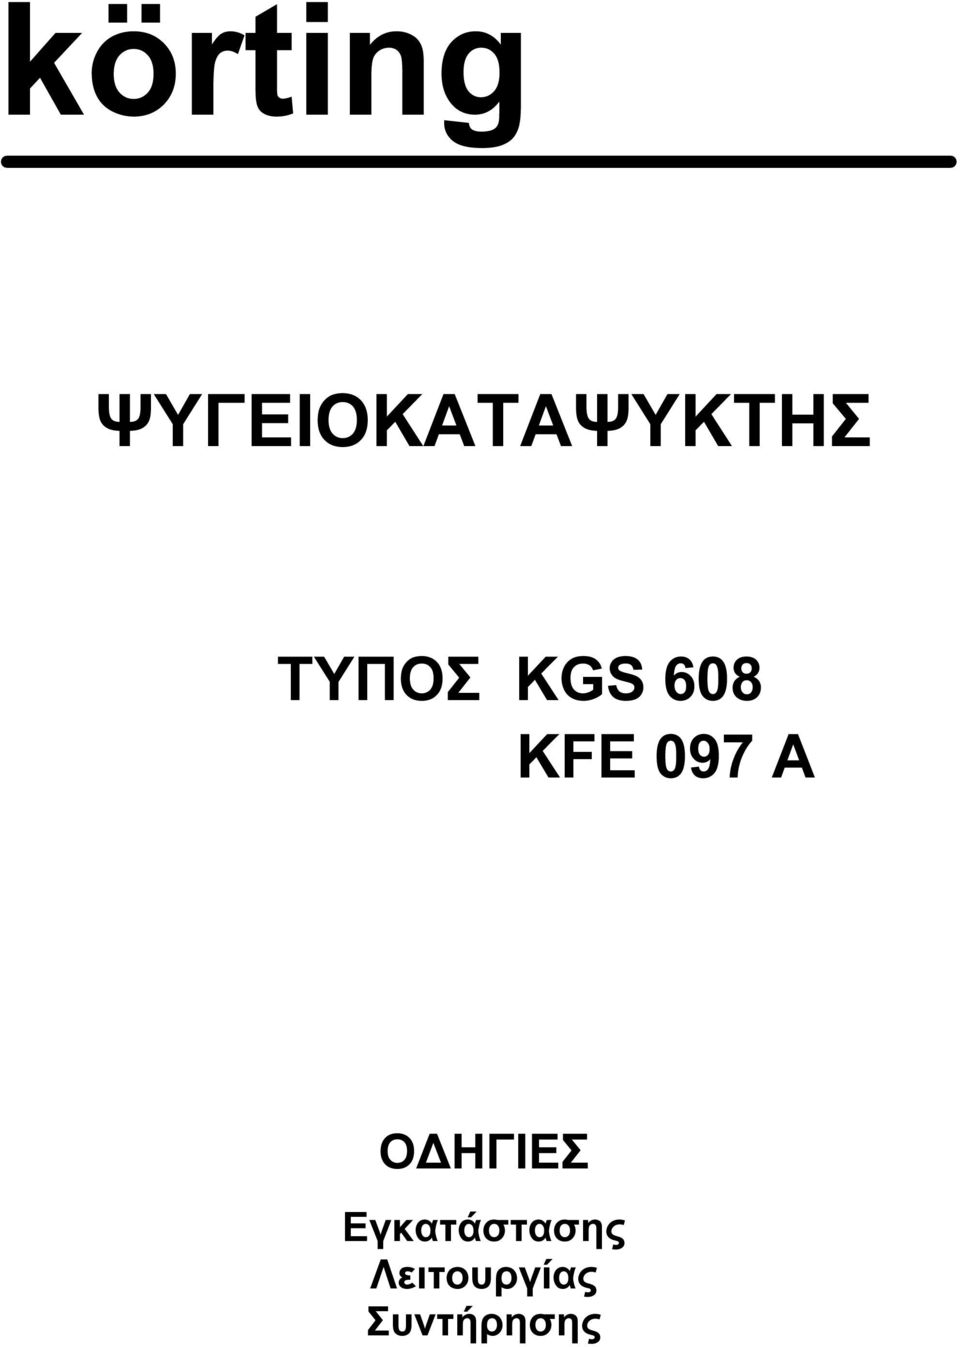 KGS 608 KFE 097 A